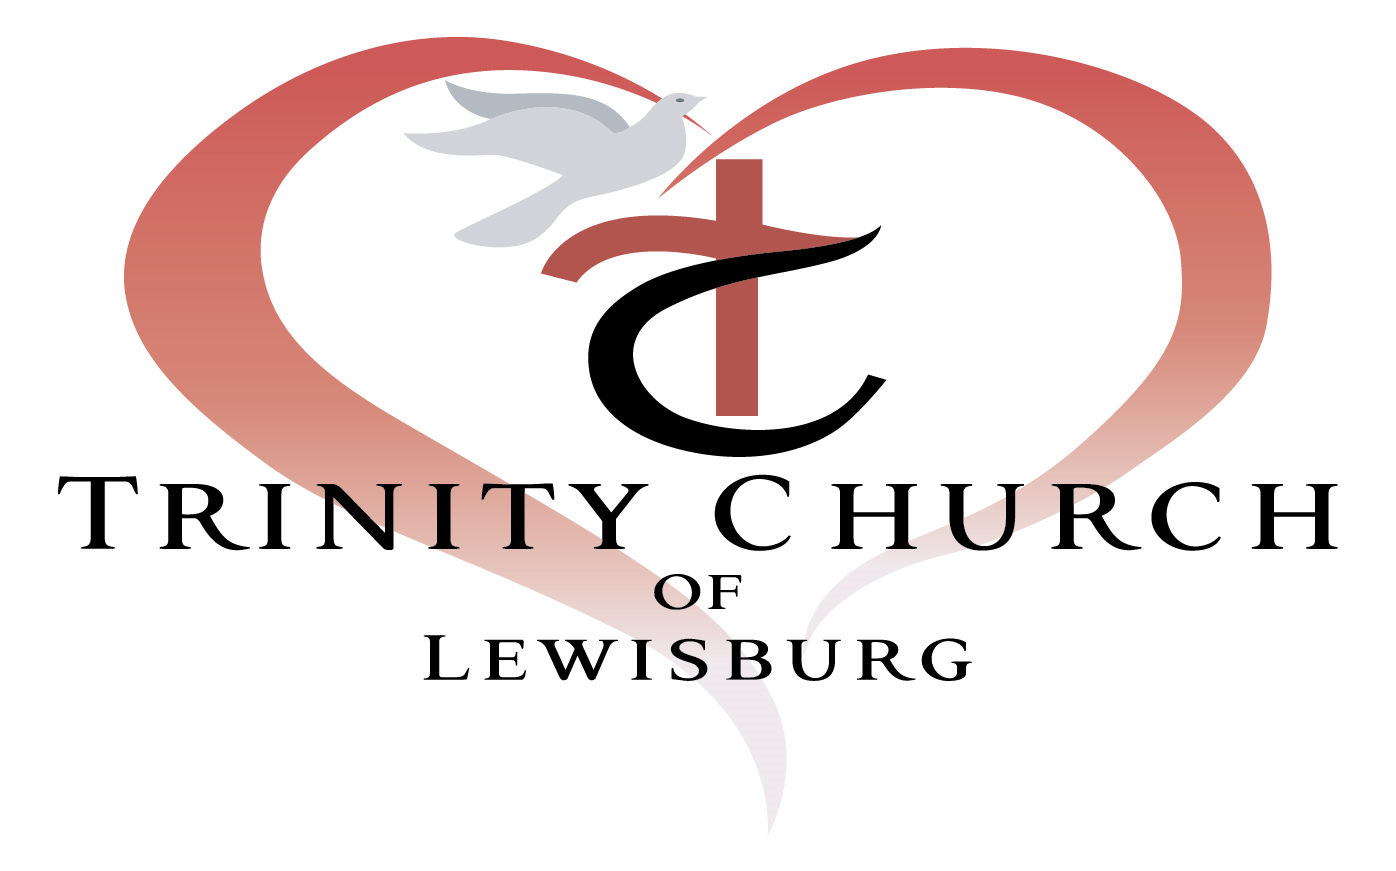 TRinity Church of Lewisburg